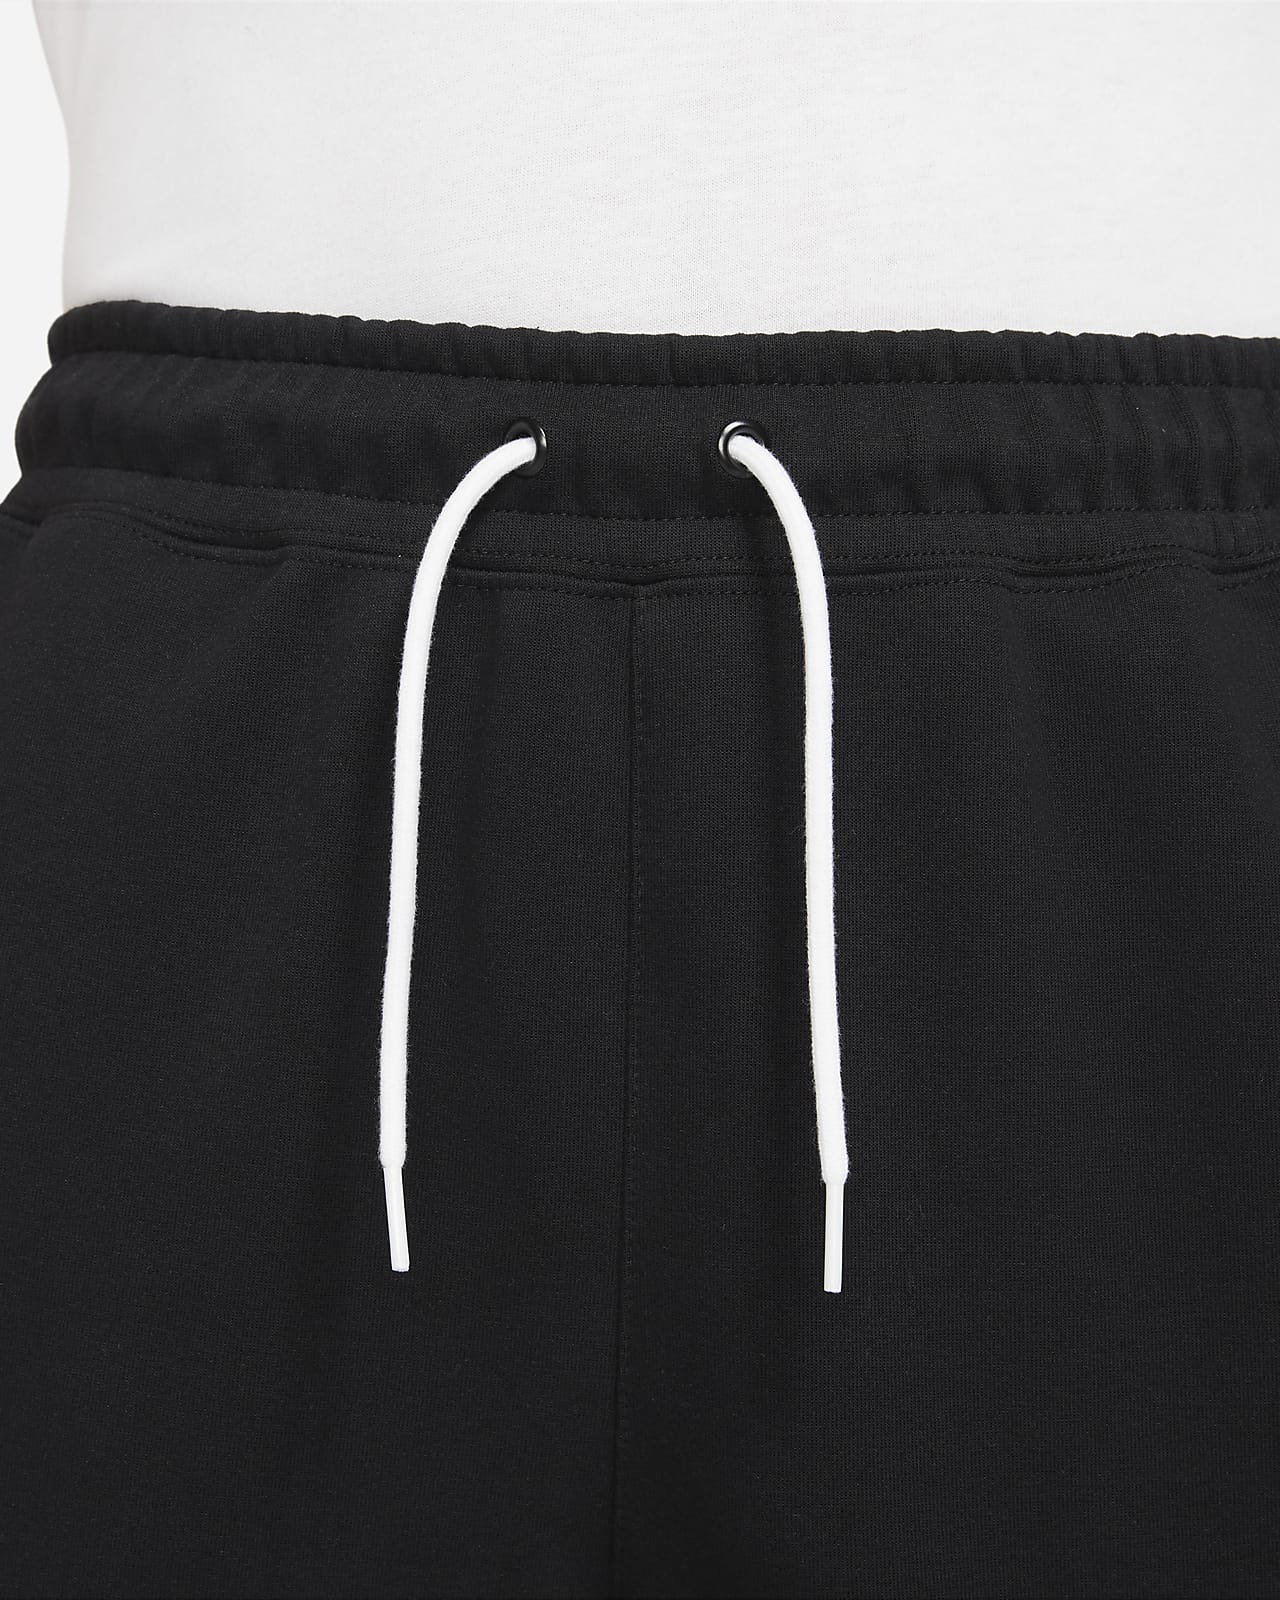 Nike Boys' Tech Fleece Winterized Pants | Dick's Sporting Goods